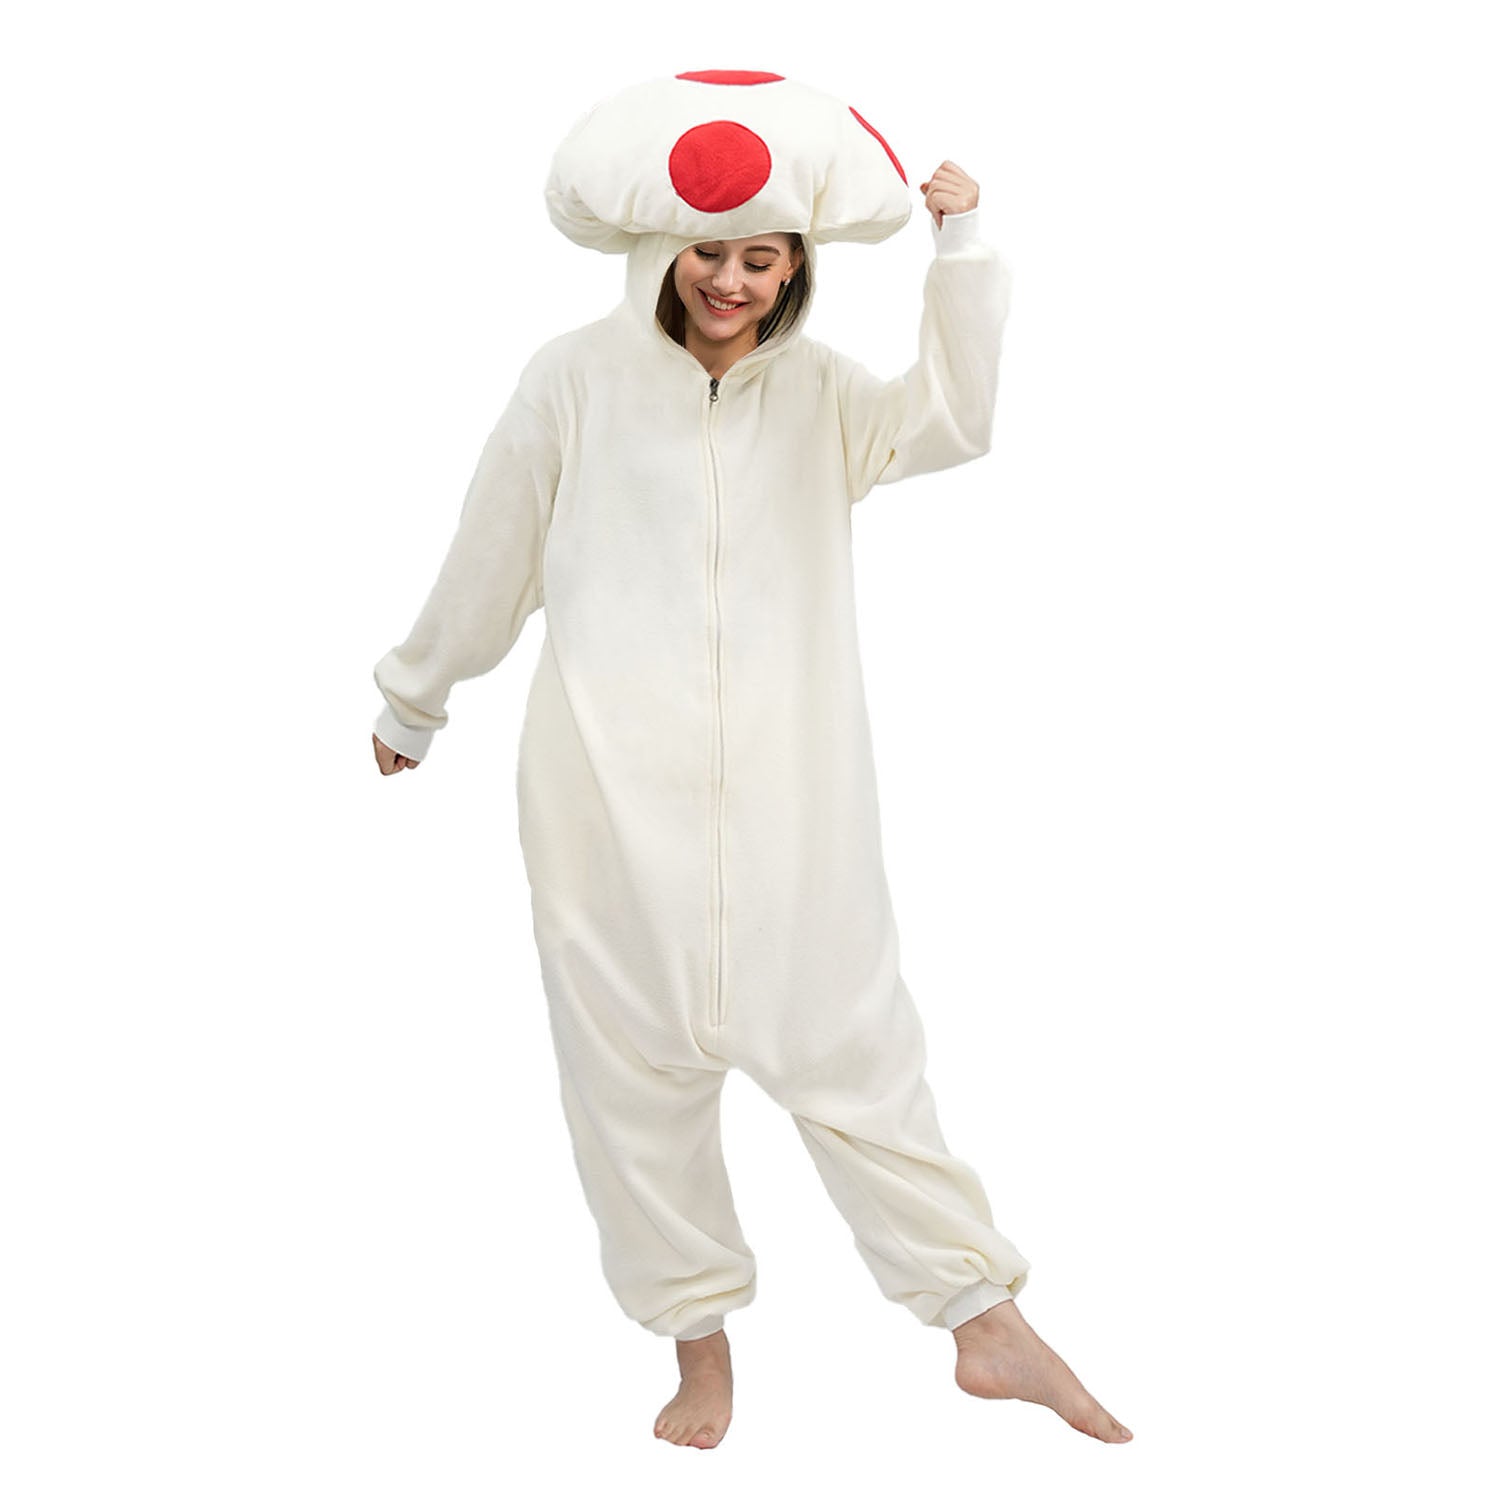 Adult Red Spot Mushroom costume - vavalad